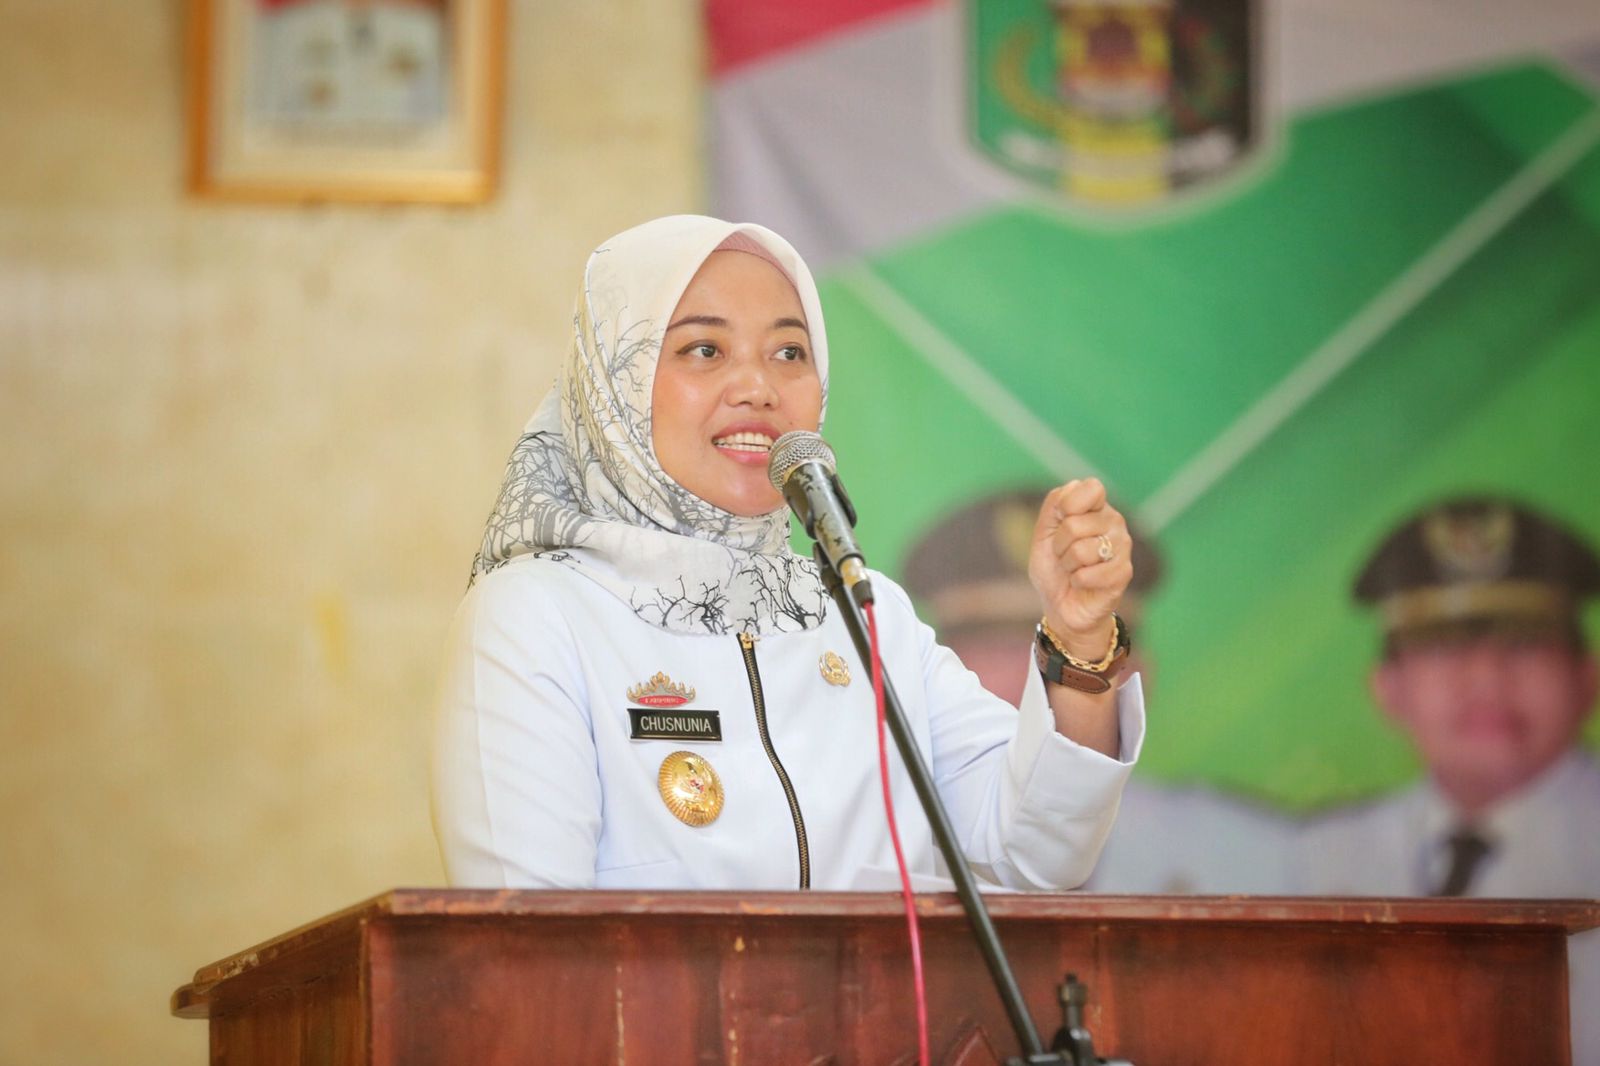 Wagub Chusnunia Chalim Hadiri Deklarasi dan Sosialisasi Sekolah Ramah Anak Tahun 2022 di Lampung Timur